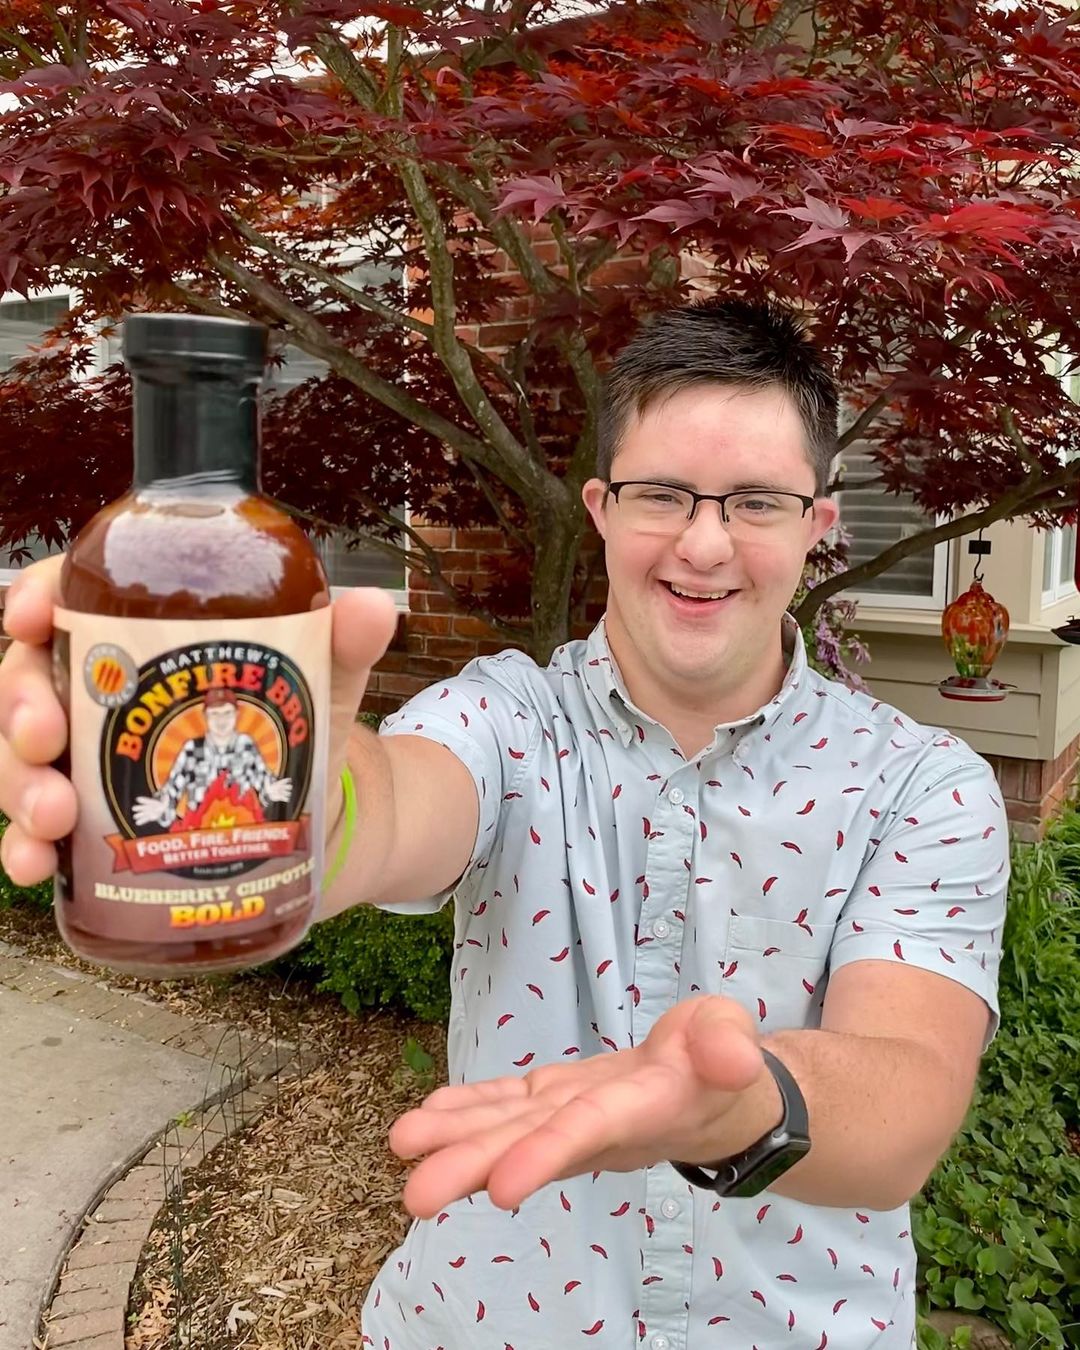 Matthew holding up a bottle of hot sauce